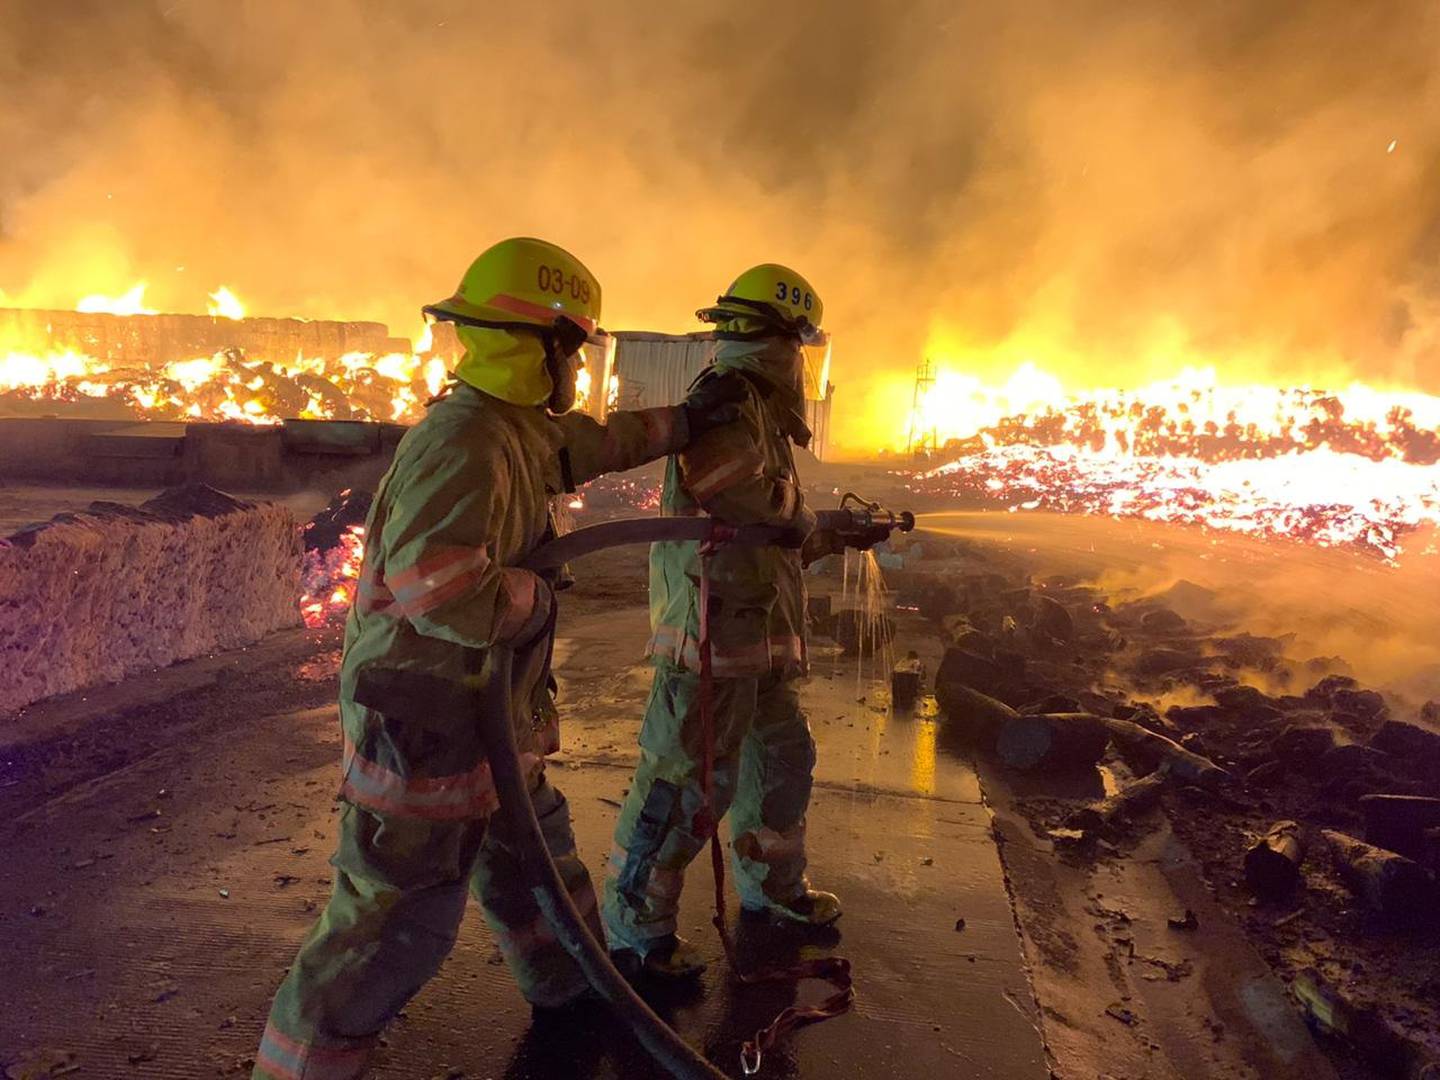 Incendio en bodega de Empaques Santa Ana, en el Coyol de Alajuela. Foto Bomberos.